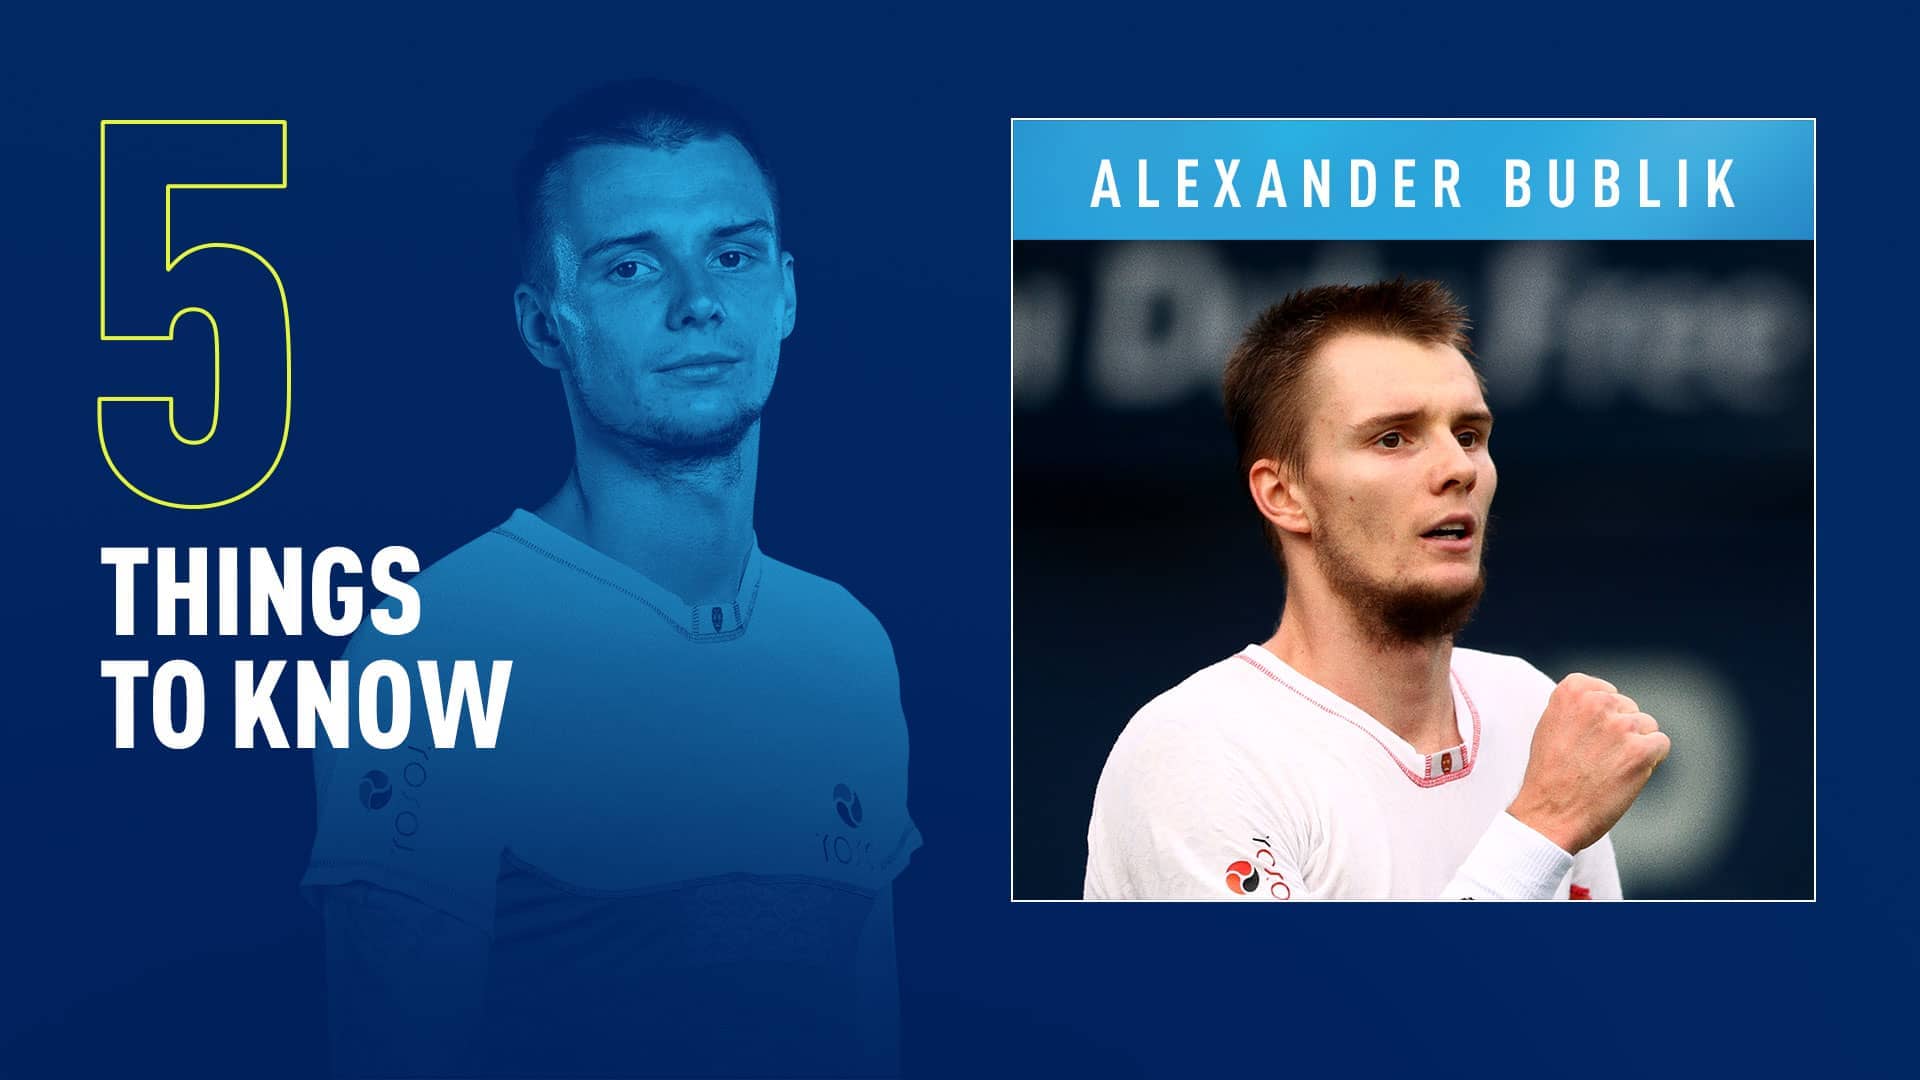 Alexander Bublik is No. 51 in the FedEx ATP Rankings.